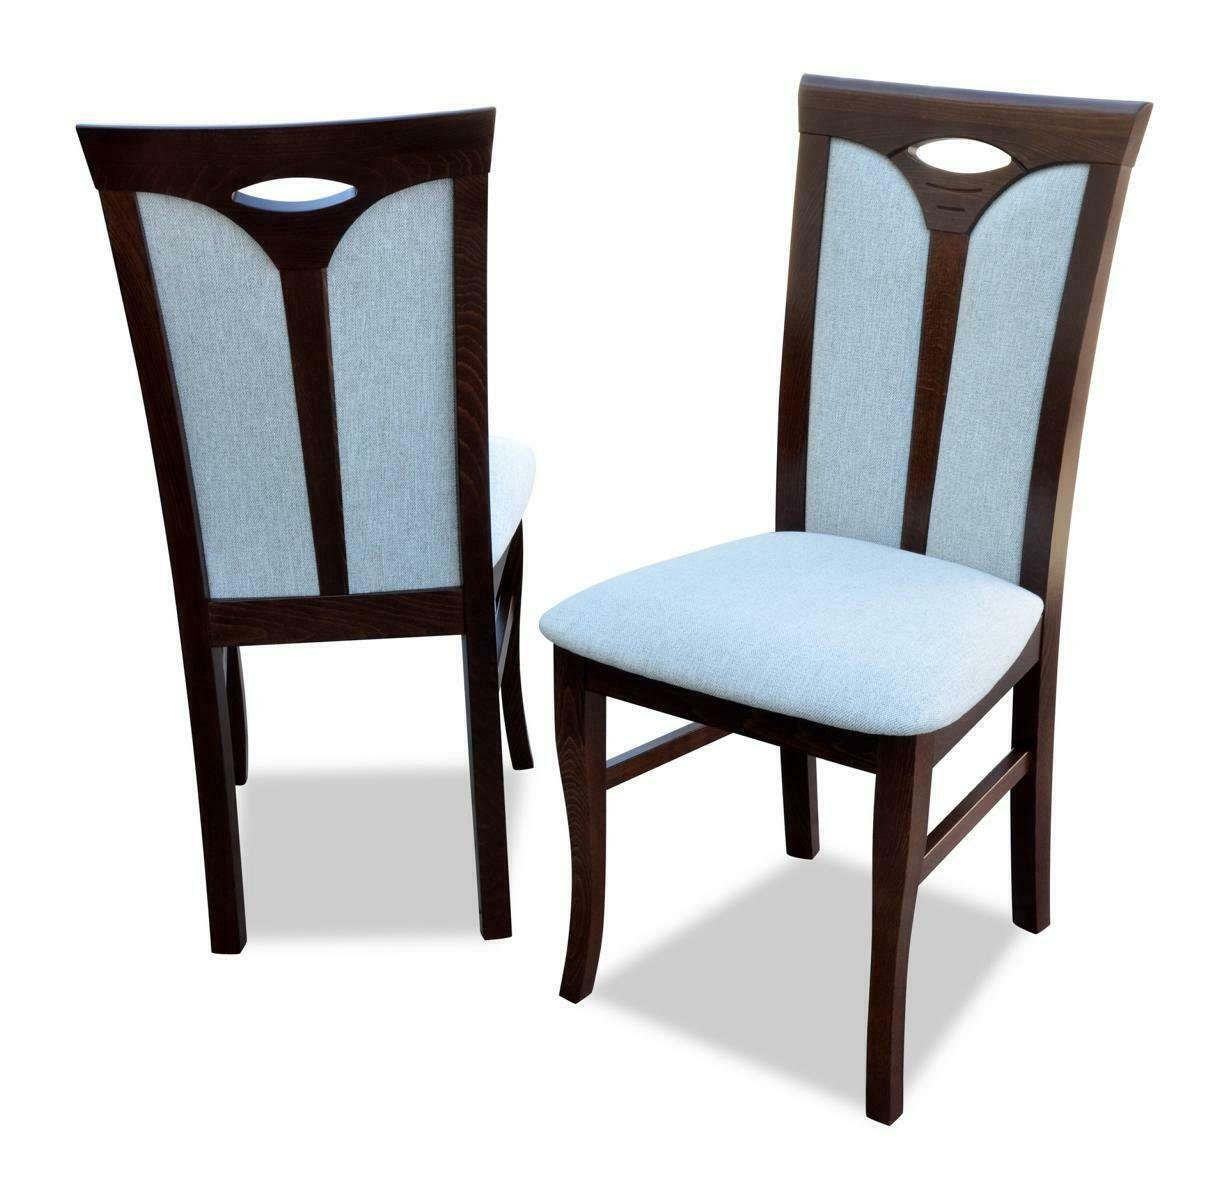 Neu Holz 4x Garnitur Gruppe Tische Stühle Polster JVmoebel Stuhl Sitz Tisch Stuhl, Set Lehn Ess